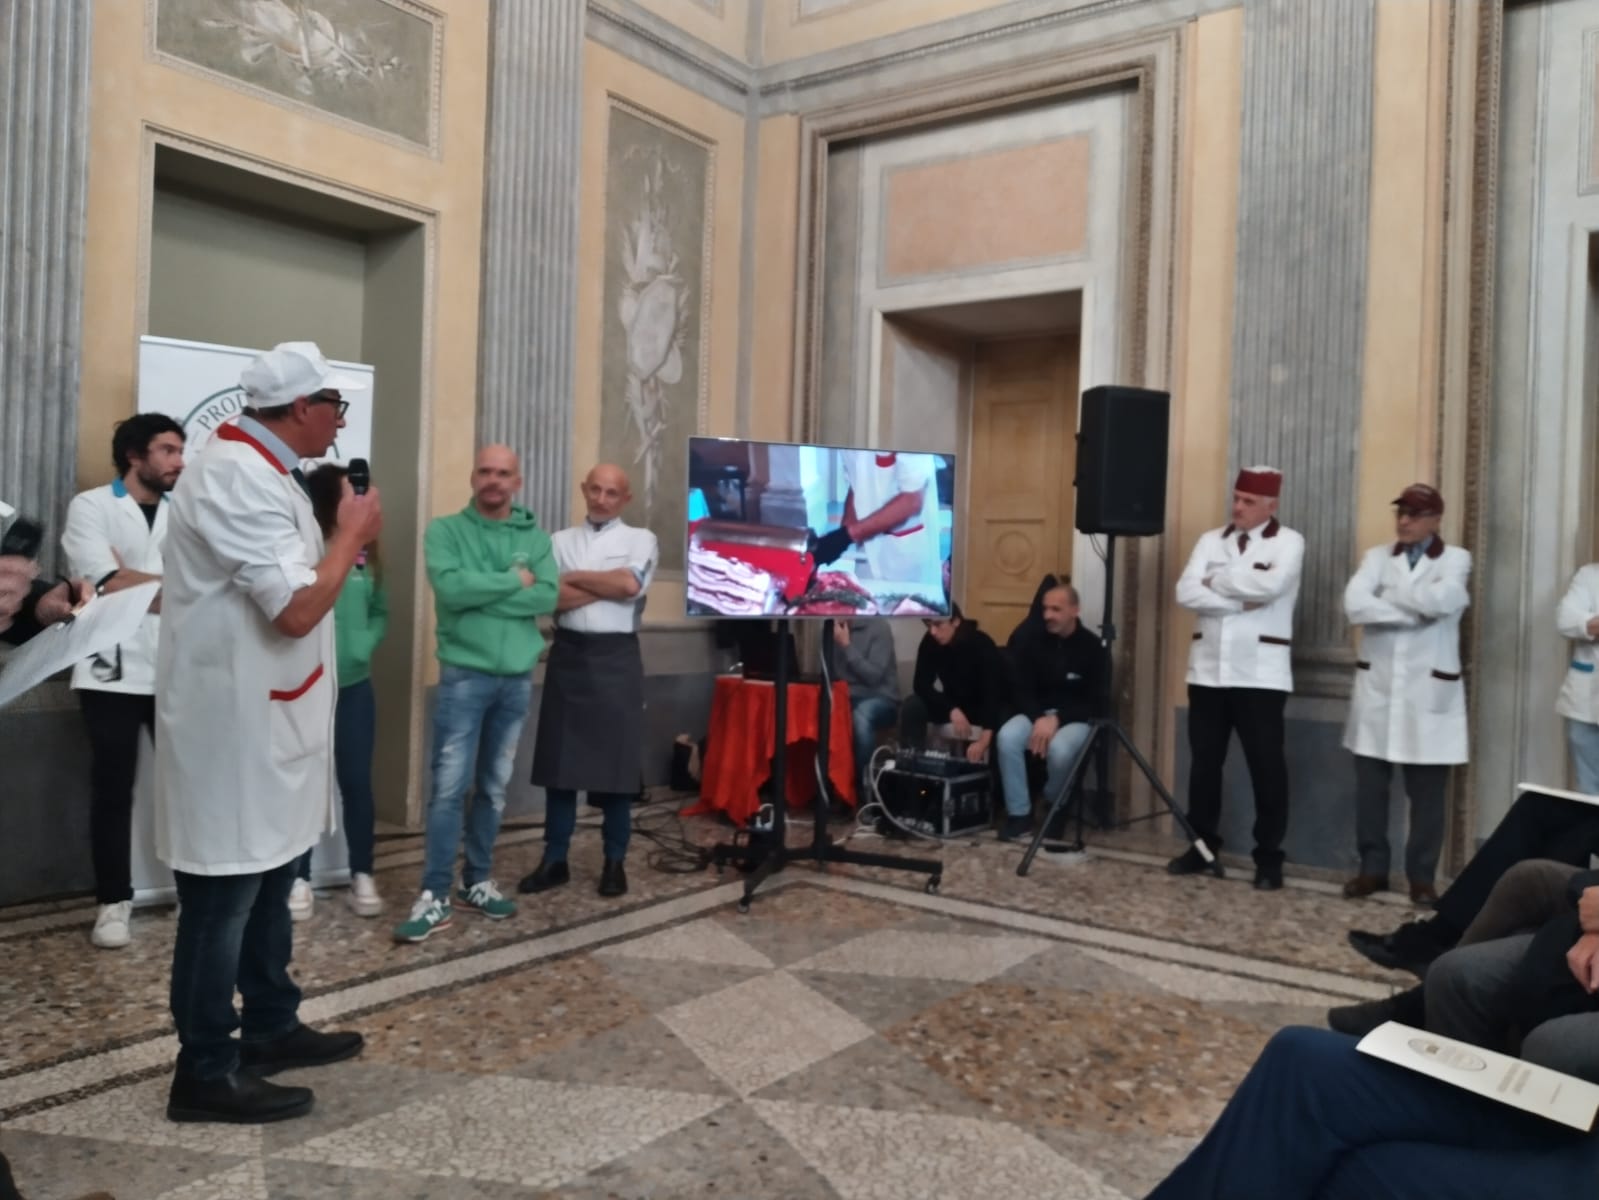 Monza Villa reale presentazione associazione produttori luganega di Monza